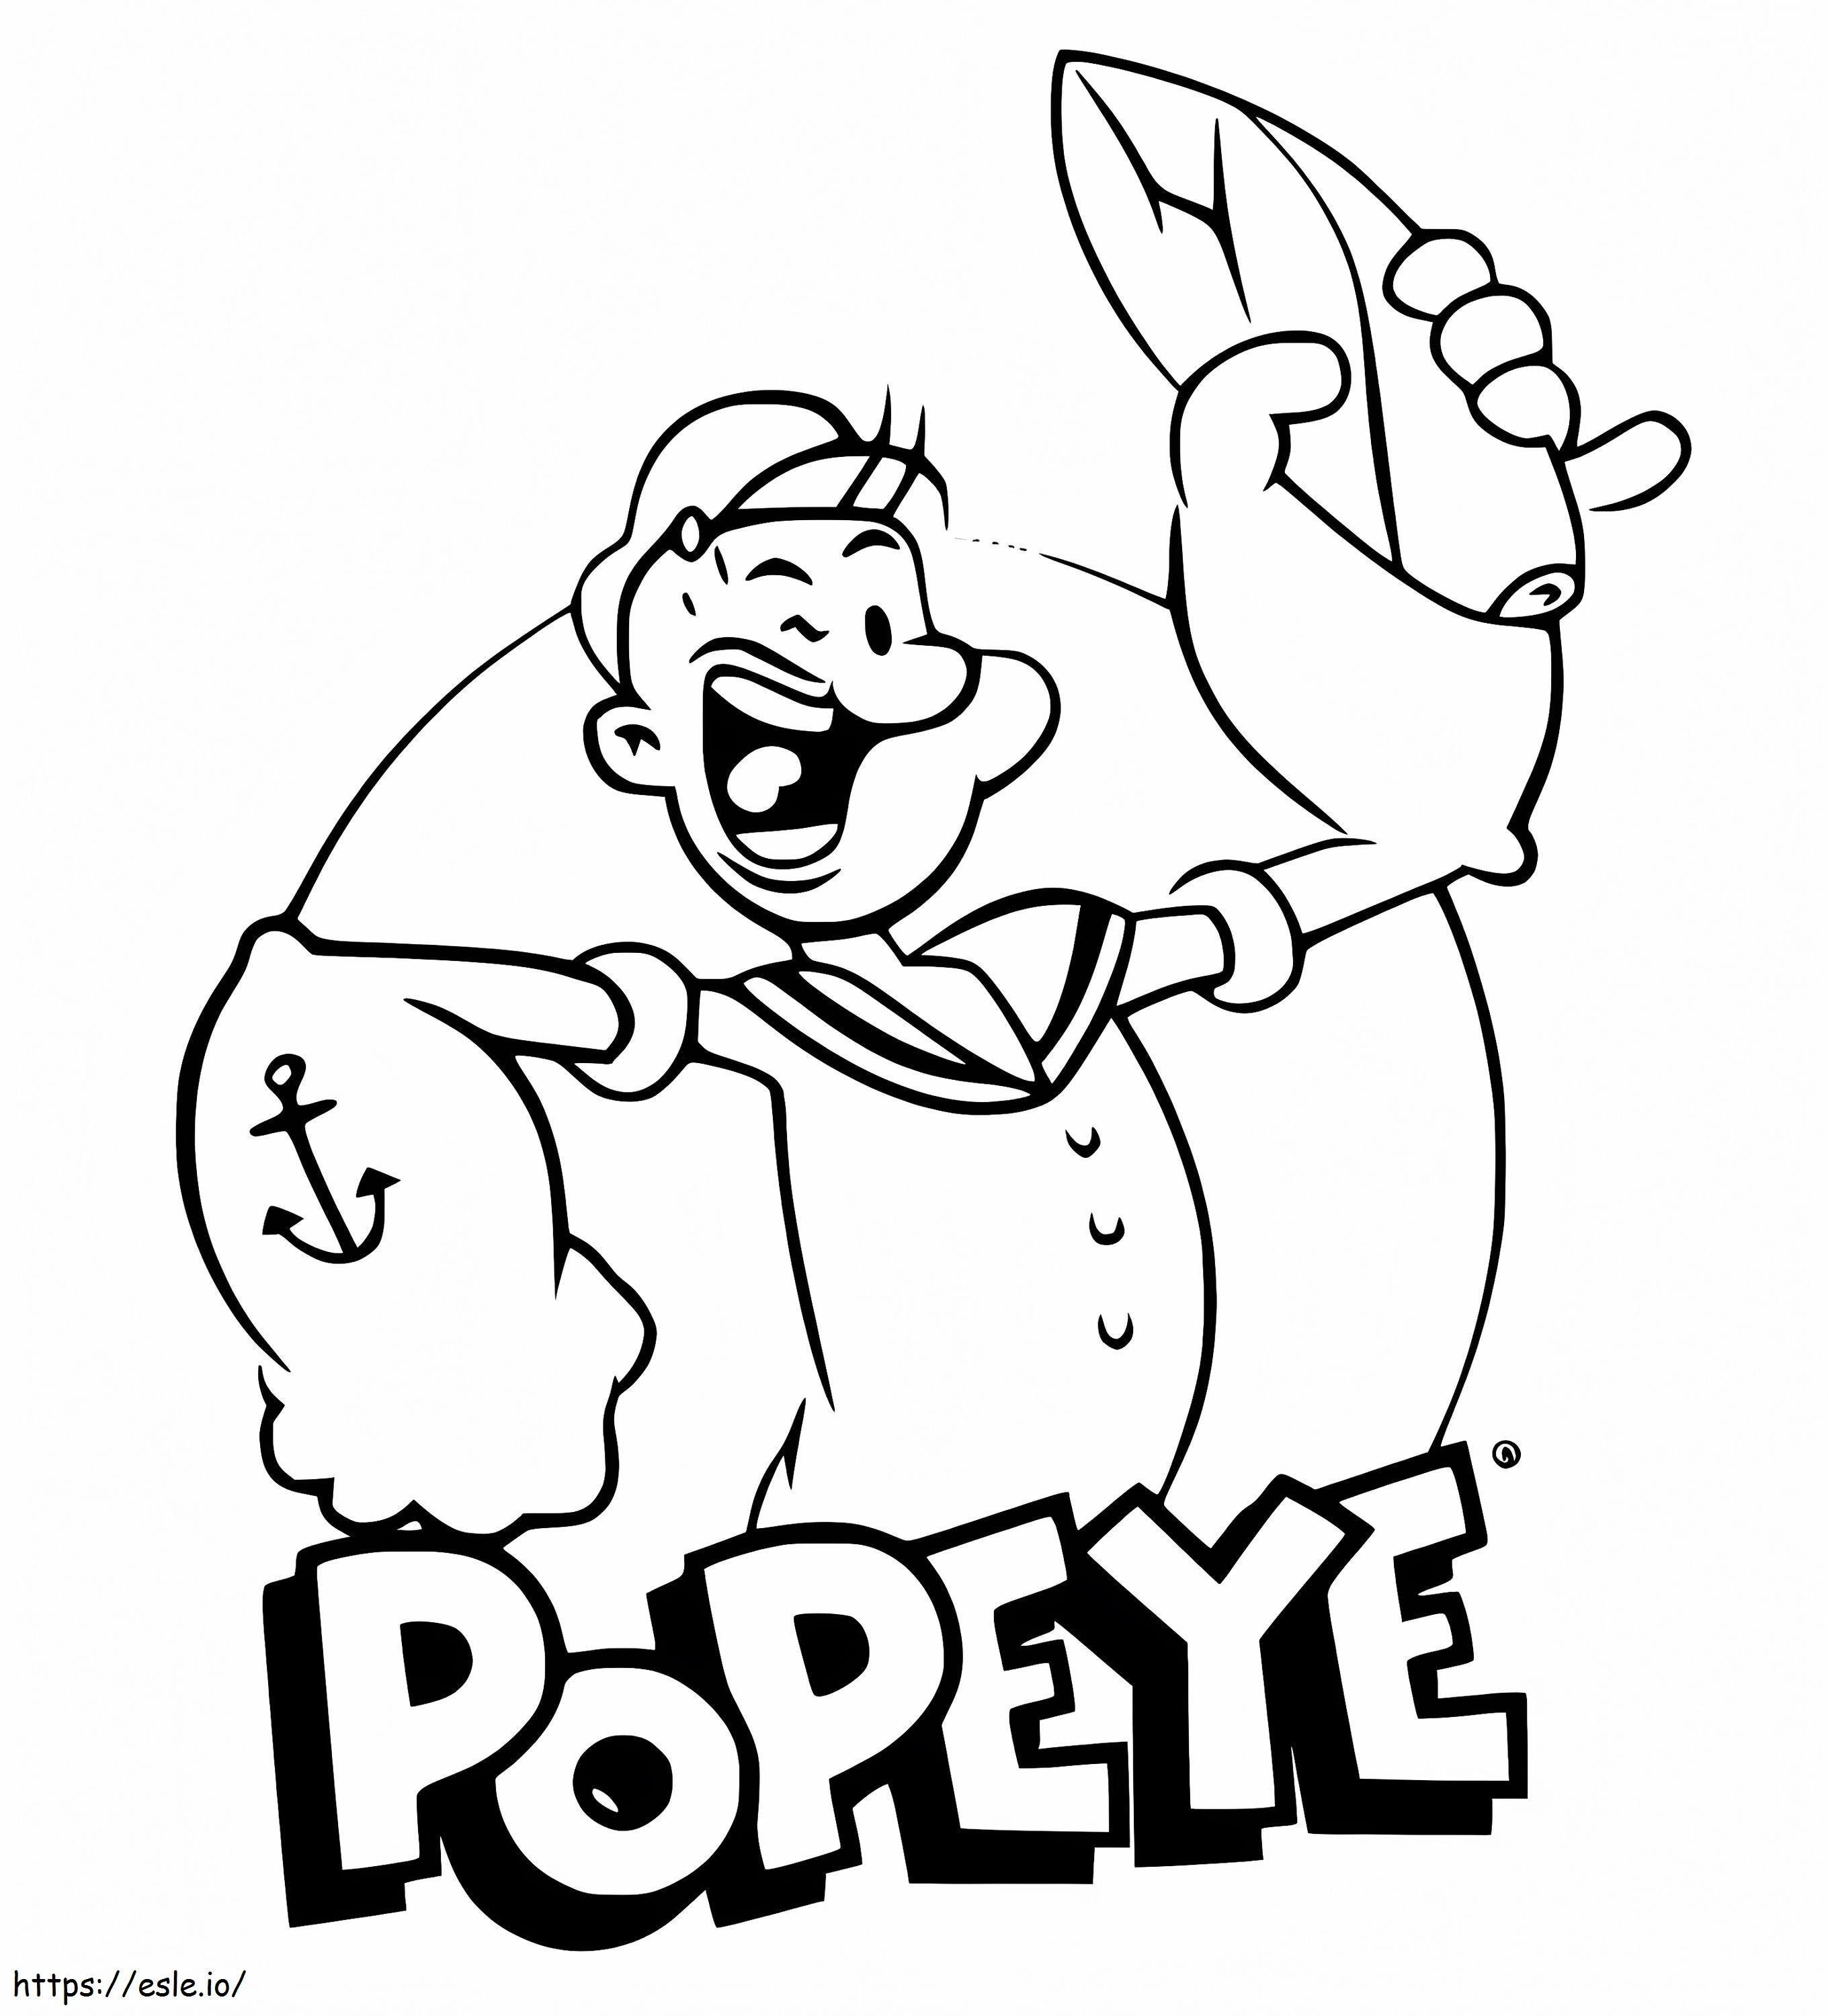 Śmiejący się Popeye kolorowanka